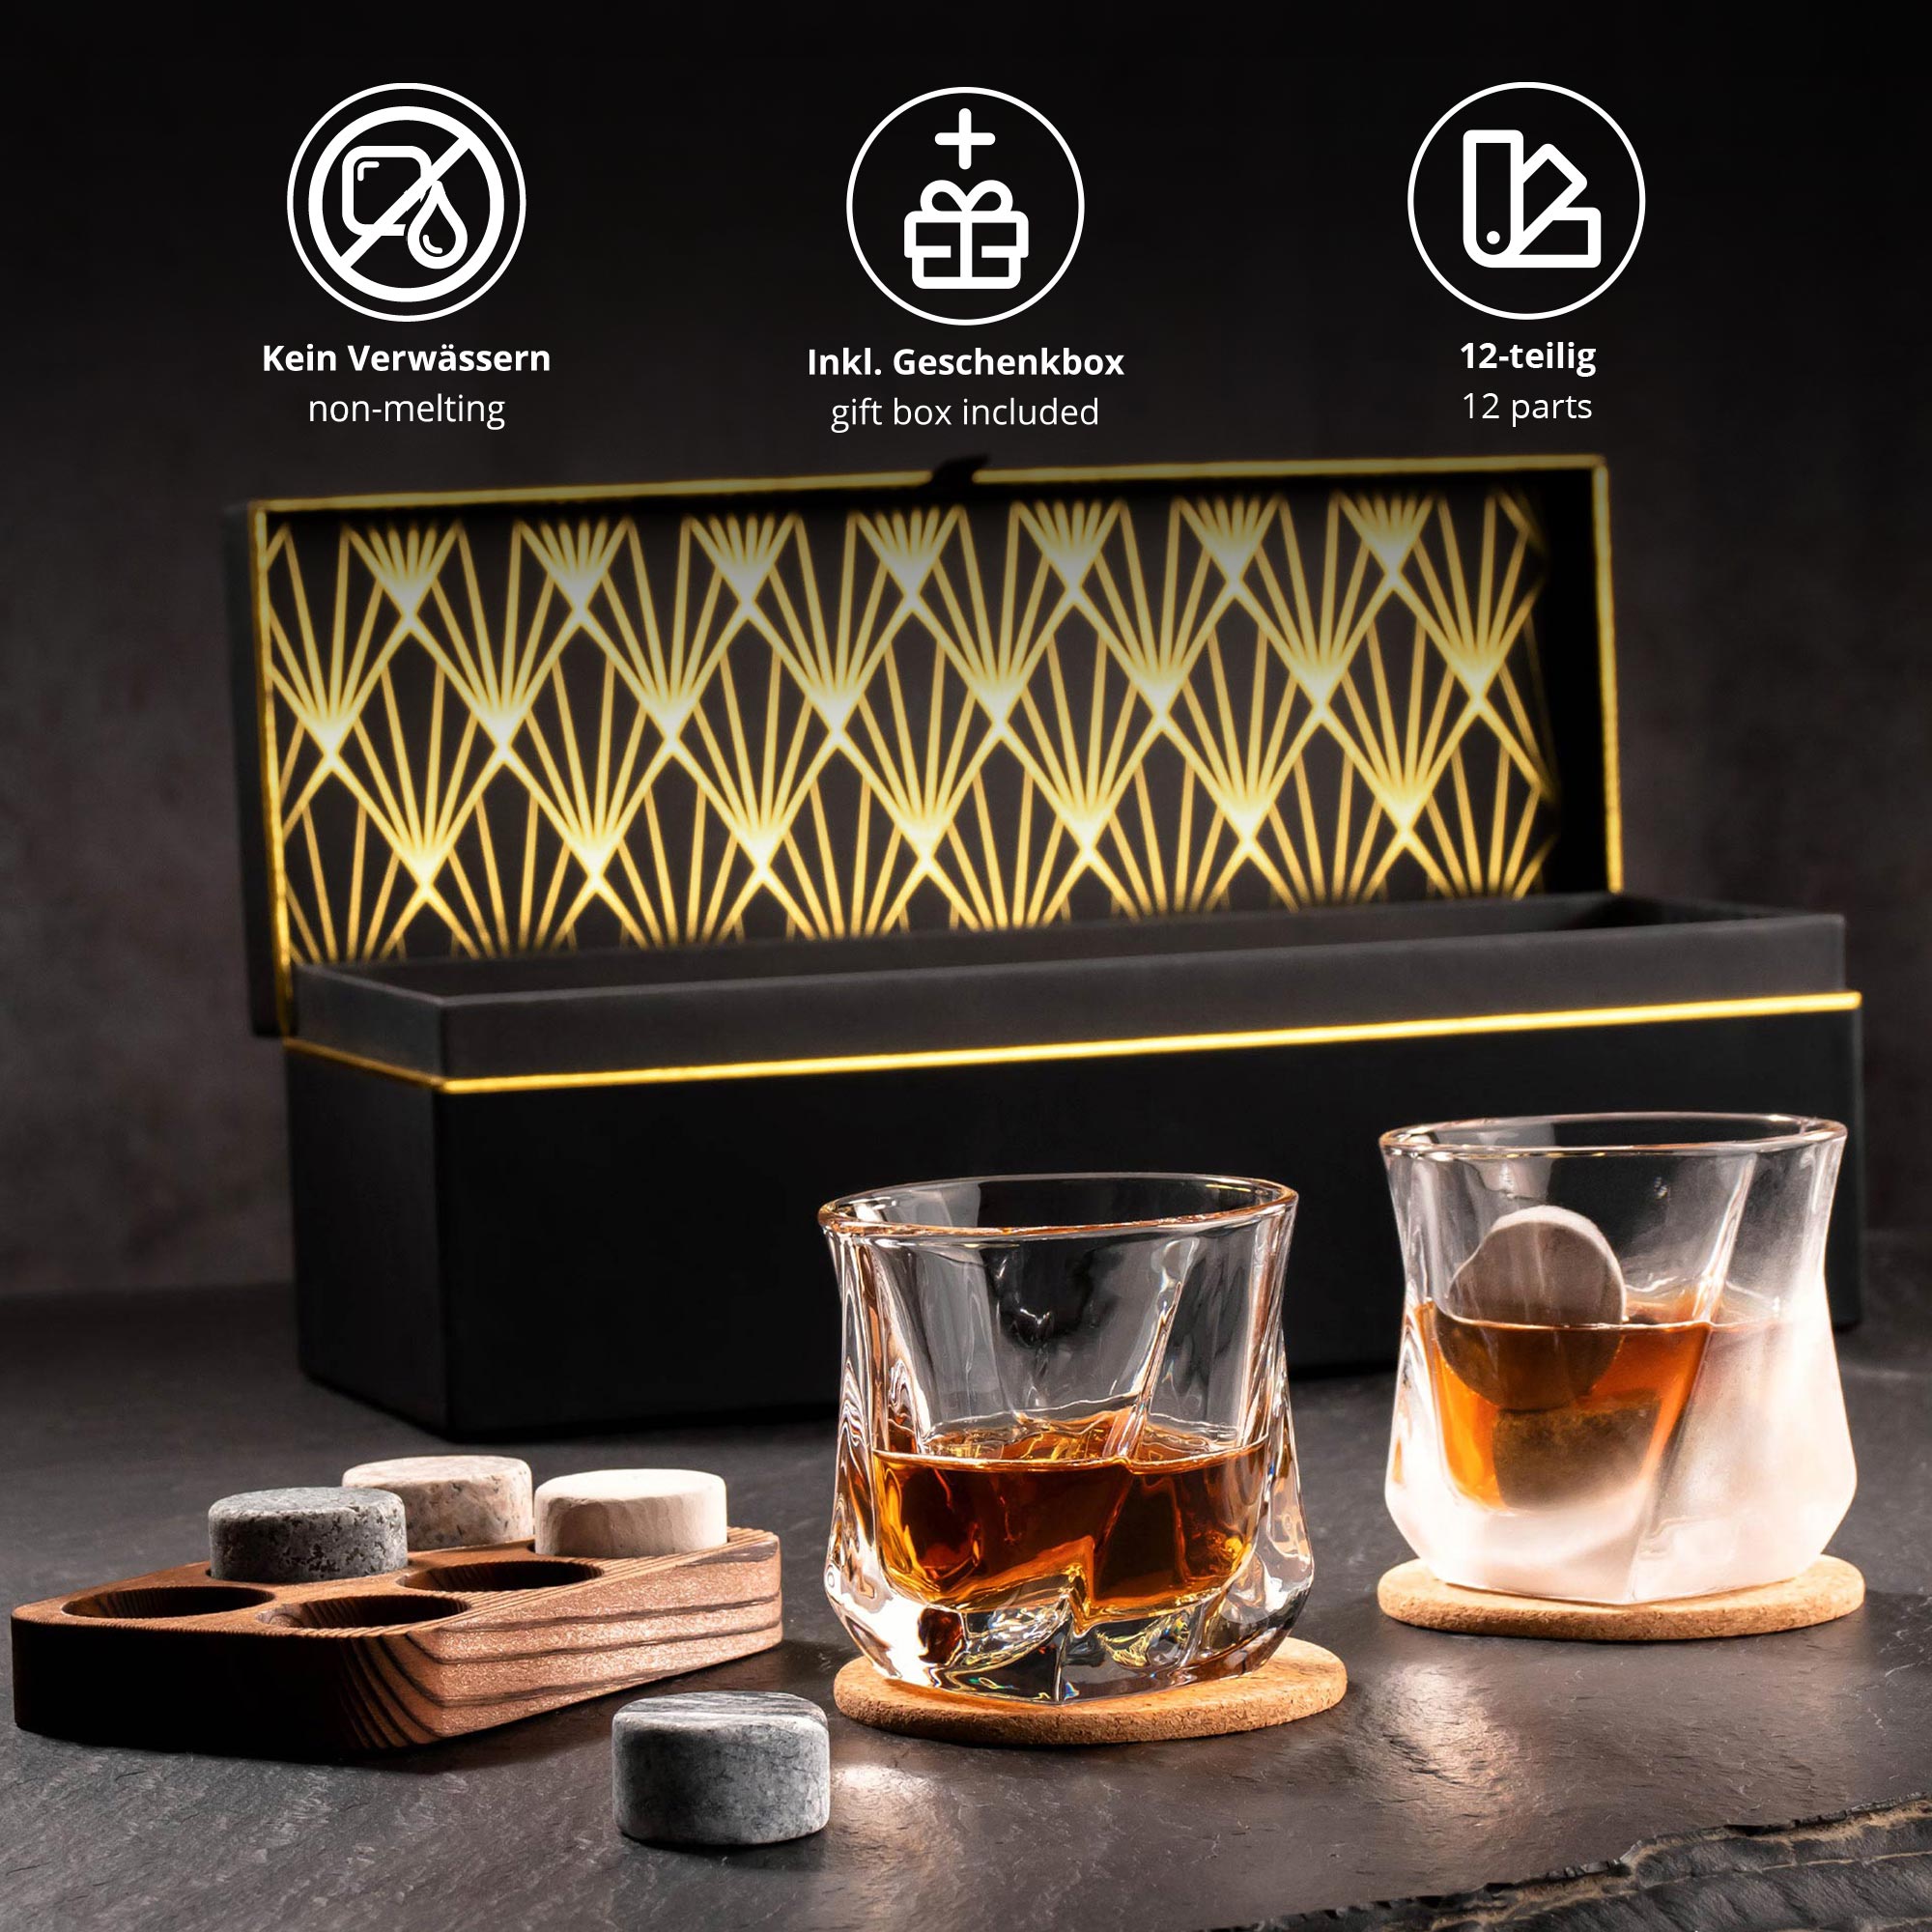 Whisky Set mit Whiskygläsern in edler Geschenkbox 0021-0002-EU-0000 - 1